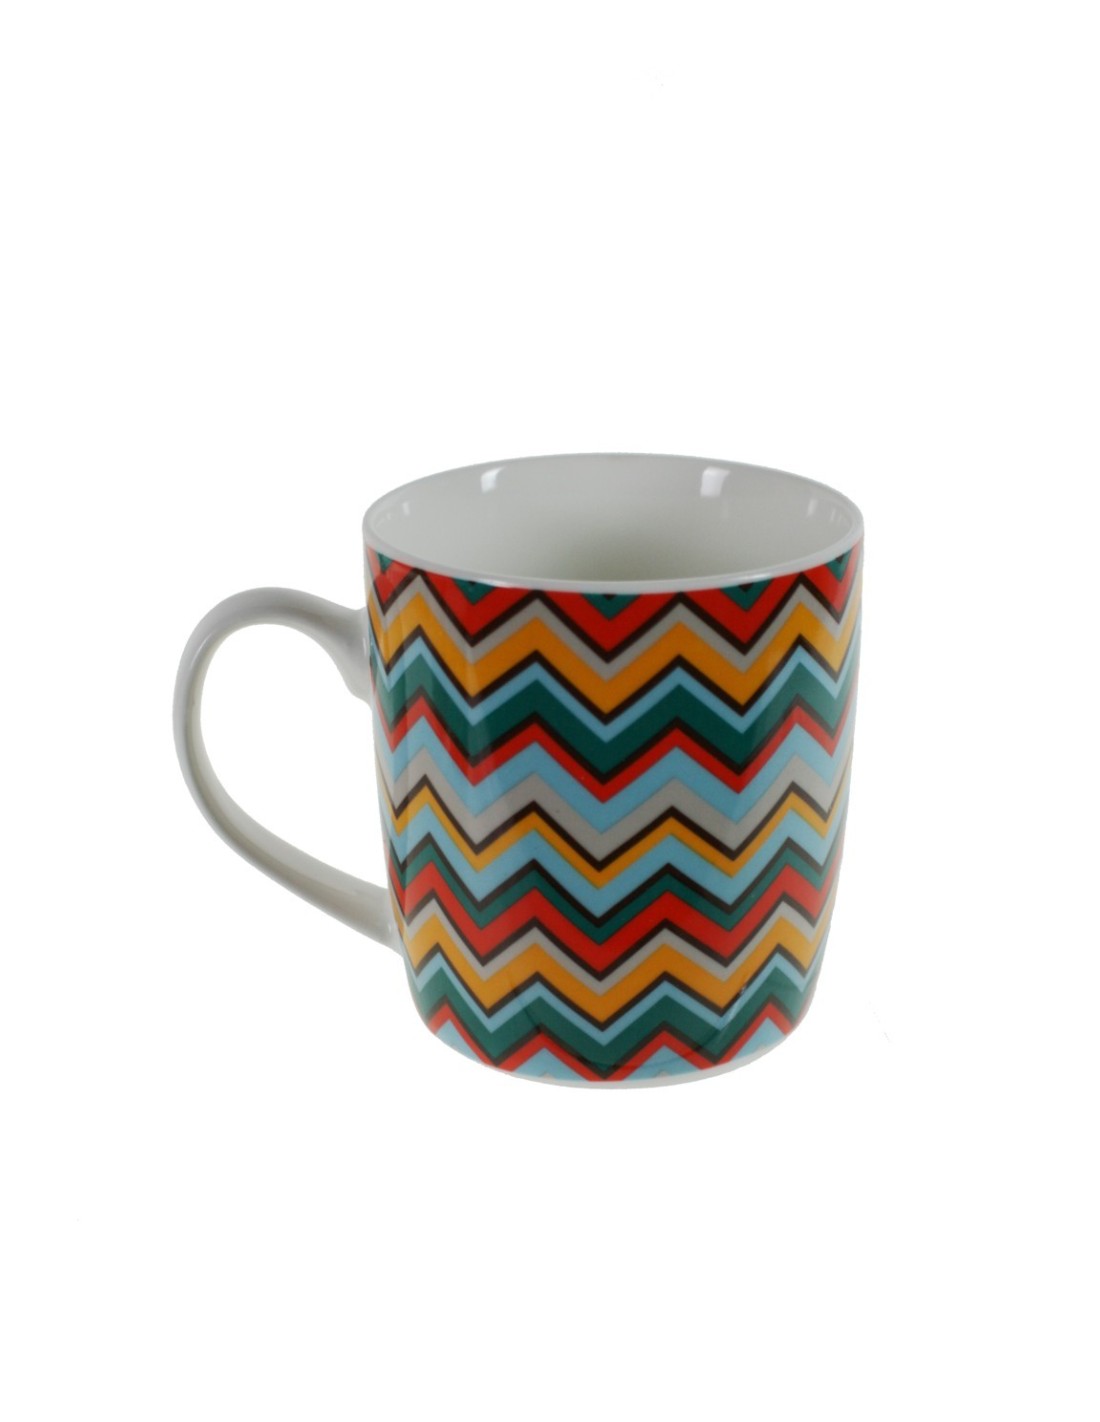 Taza mug taza para café de porcelana multicolores diseño geométrico estilo vintage para los desayunos